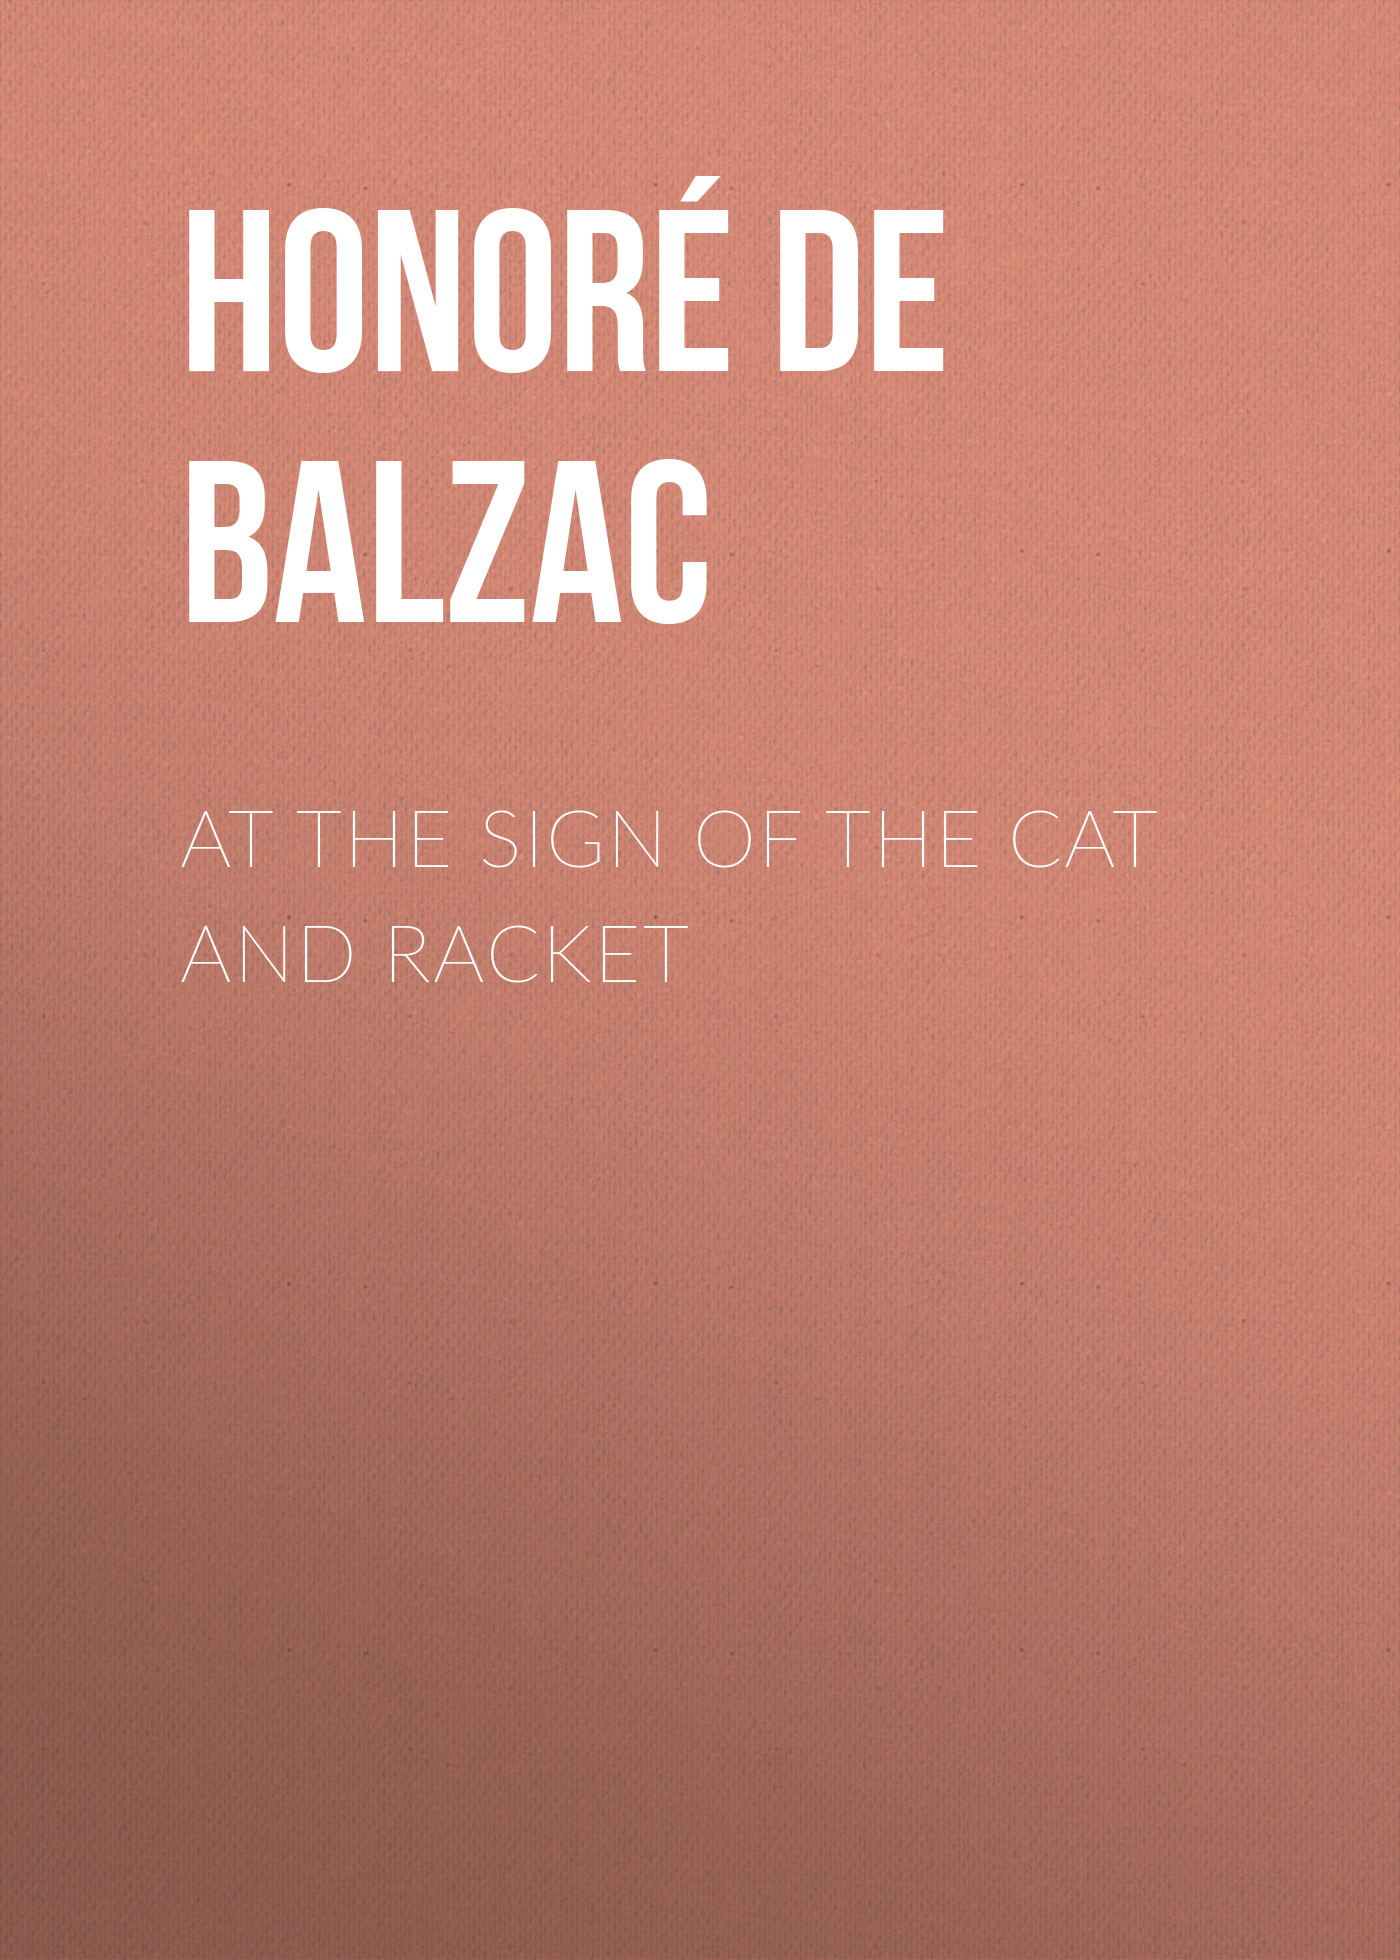 Книга At the Sign of the Cat and Racket из серии , созданная Honoré Balzac, может относится к жанру Литература 19 века, Зарубежная старинная литература, Зарубежная классика. Стоимость электронной книги At the Sign of the Cat and Racket с идентификатором 25018979 составляет 0 руб.